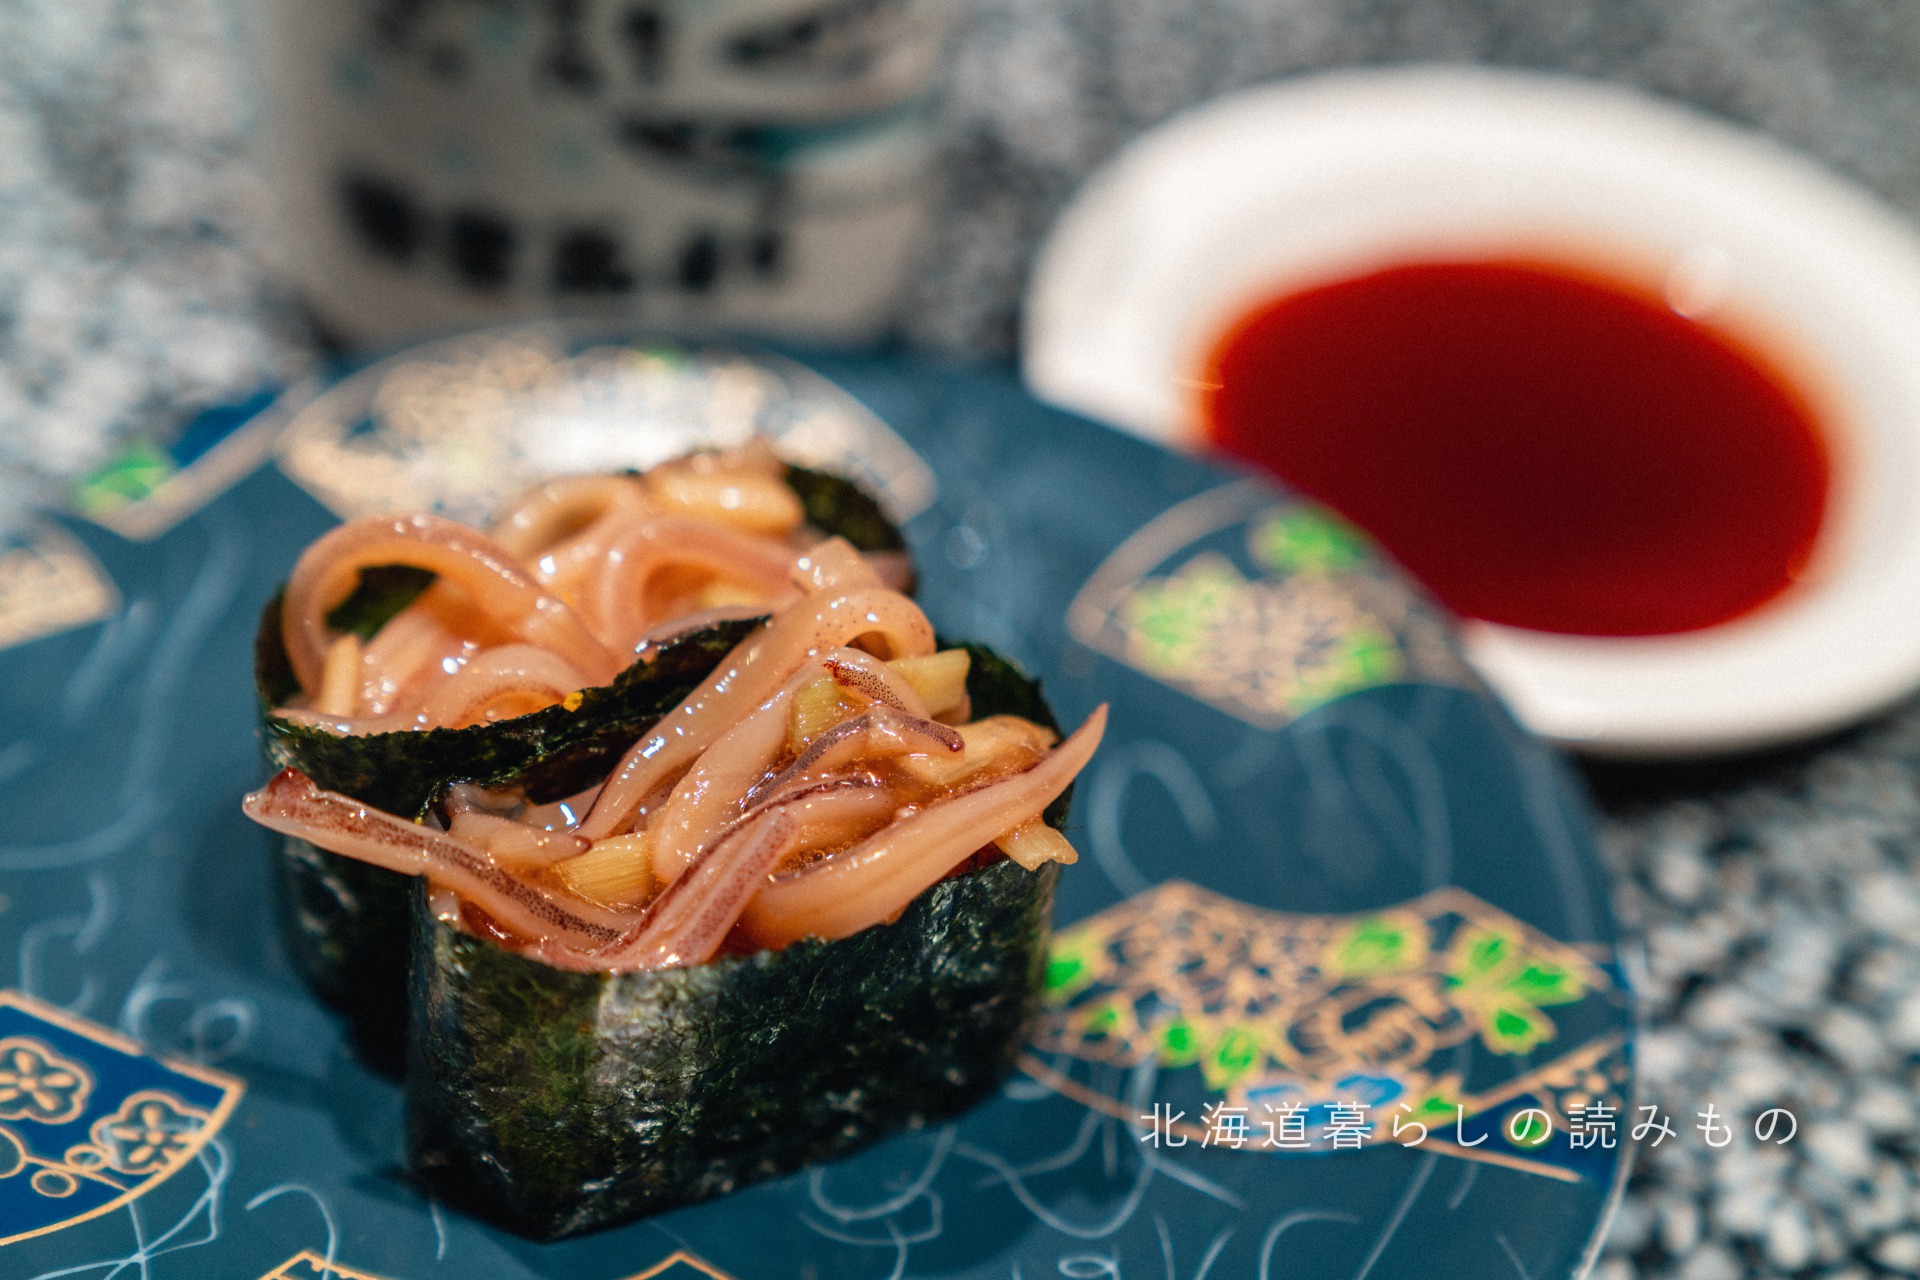 迴轉壽司根室花丸的菜單上的「墨魚知内韭菜軍艦巻」